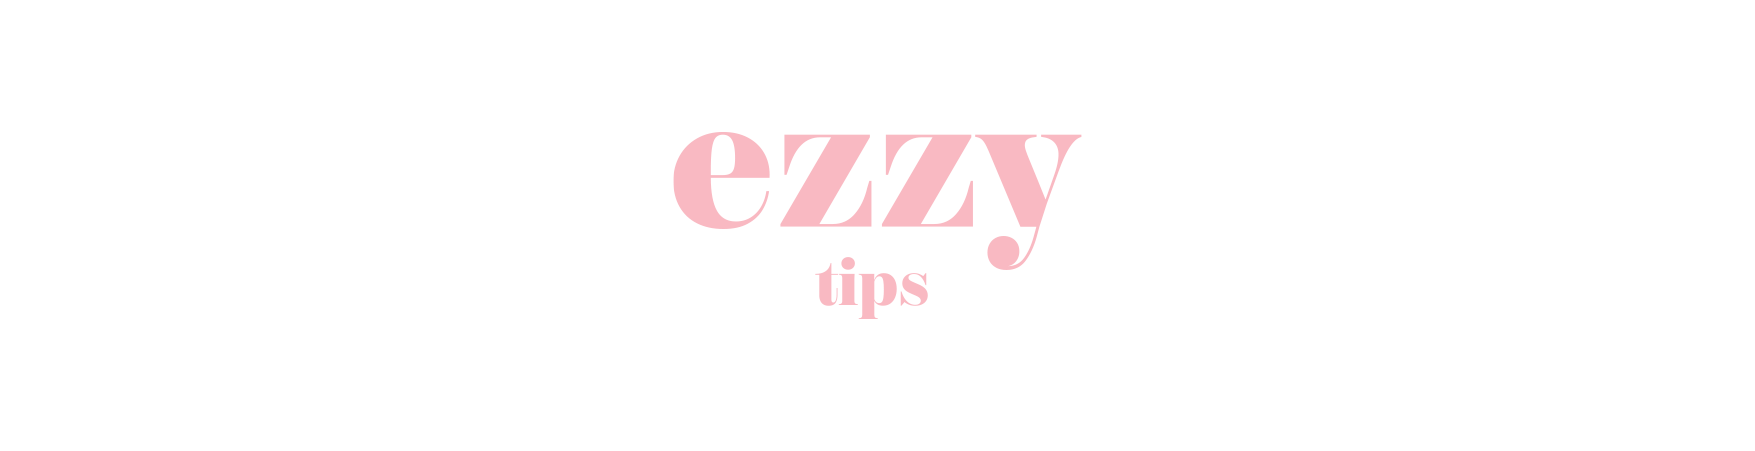 ezzy tips